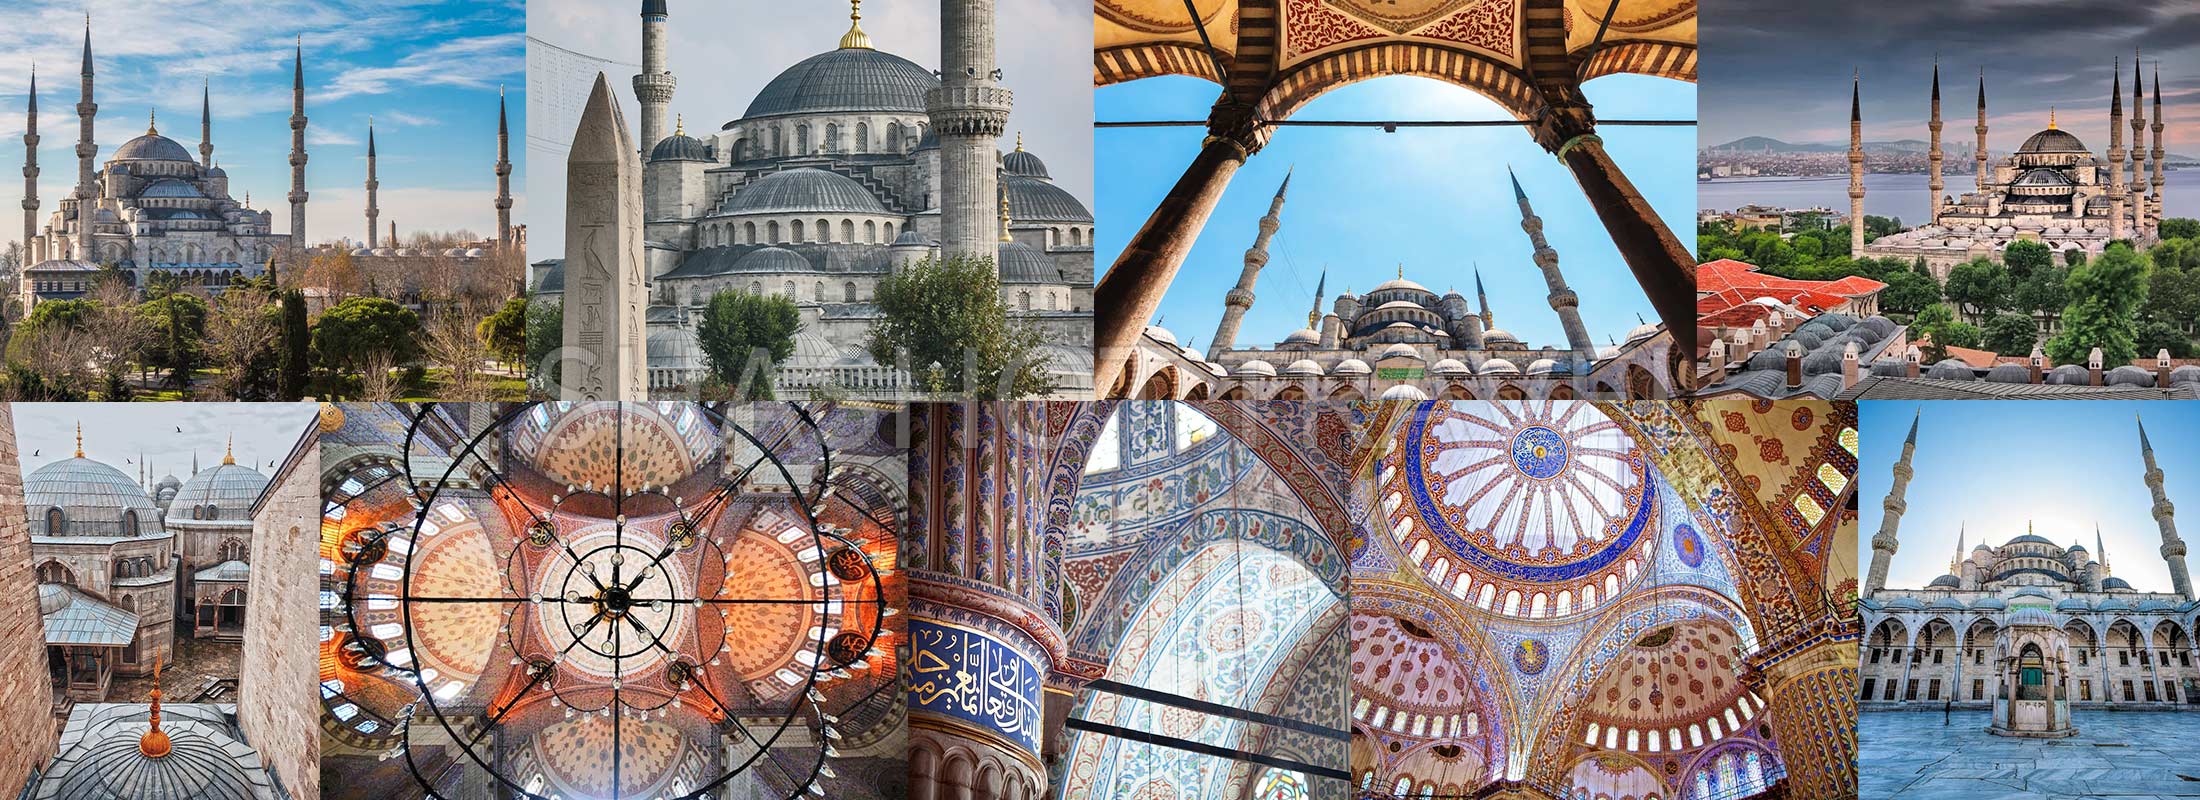 blue-mosque-istanbul-turkey-shashot-travel-turkiye